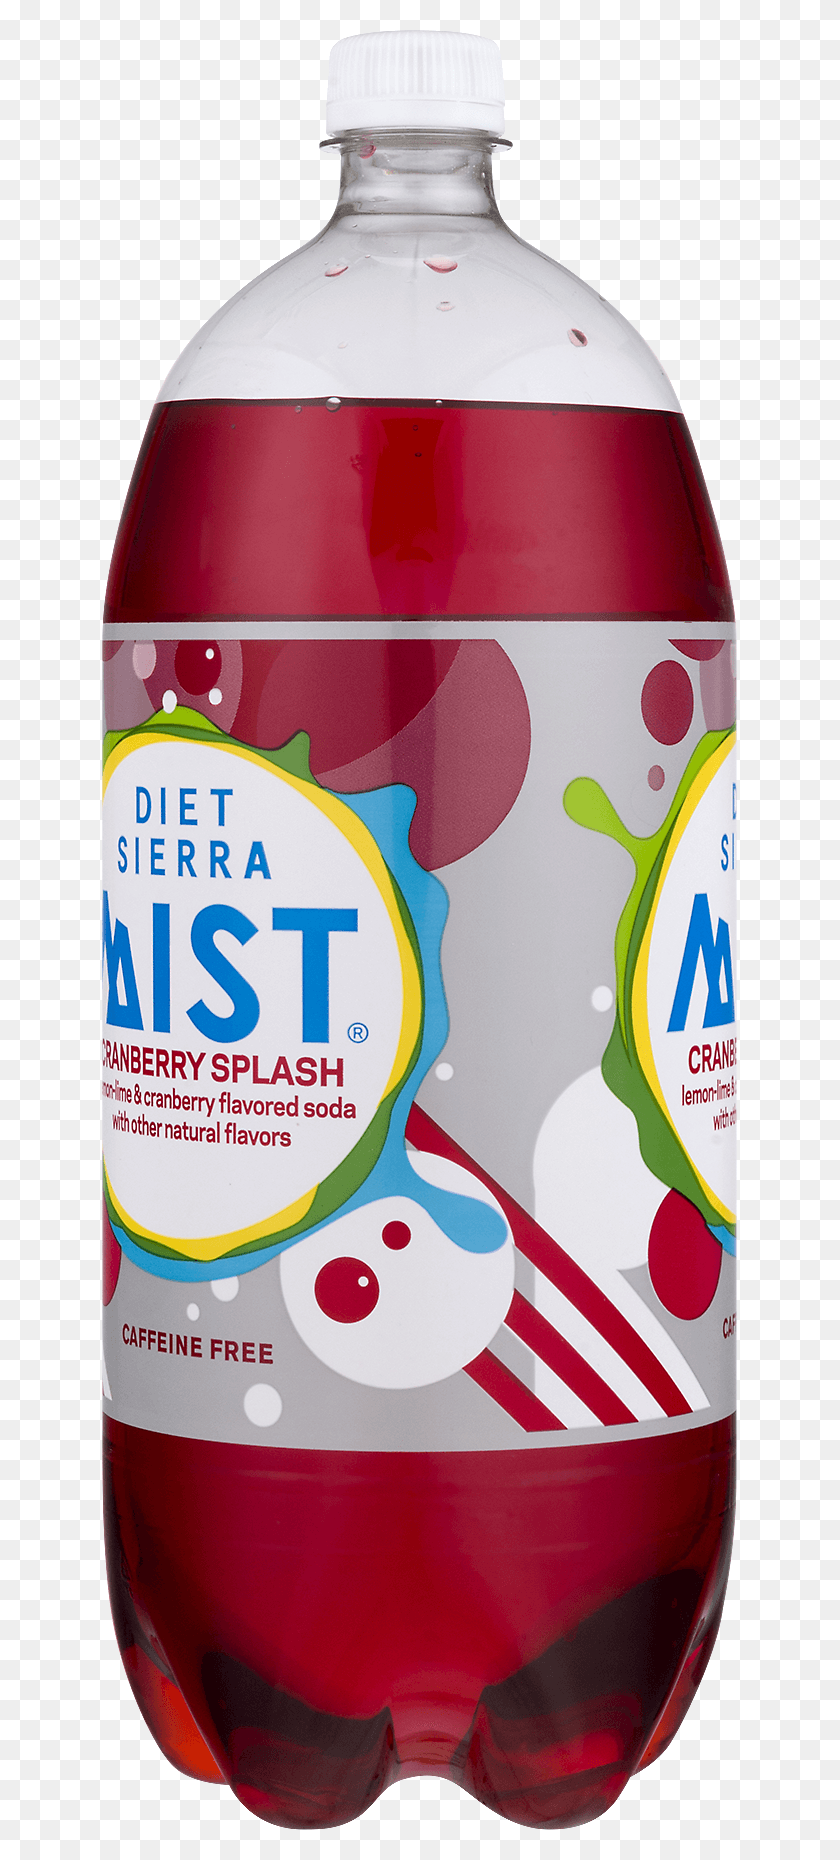 635x1800 Diet Sierra Mist Без Кофеина Без Глютена Клюквенный Sierra Mist, Олово, Банка, Бутылка Png Скачать